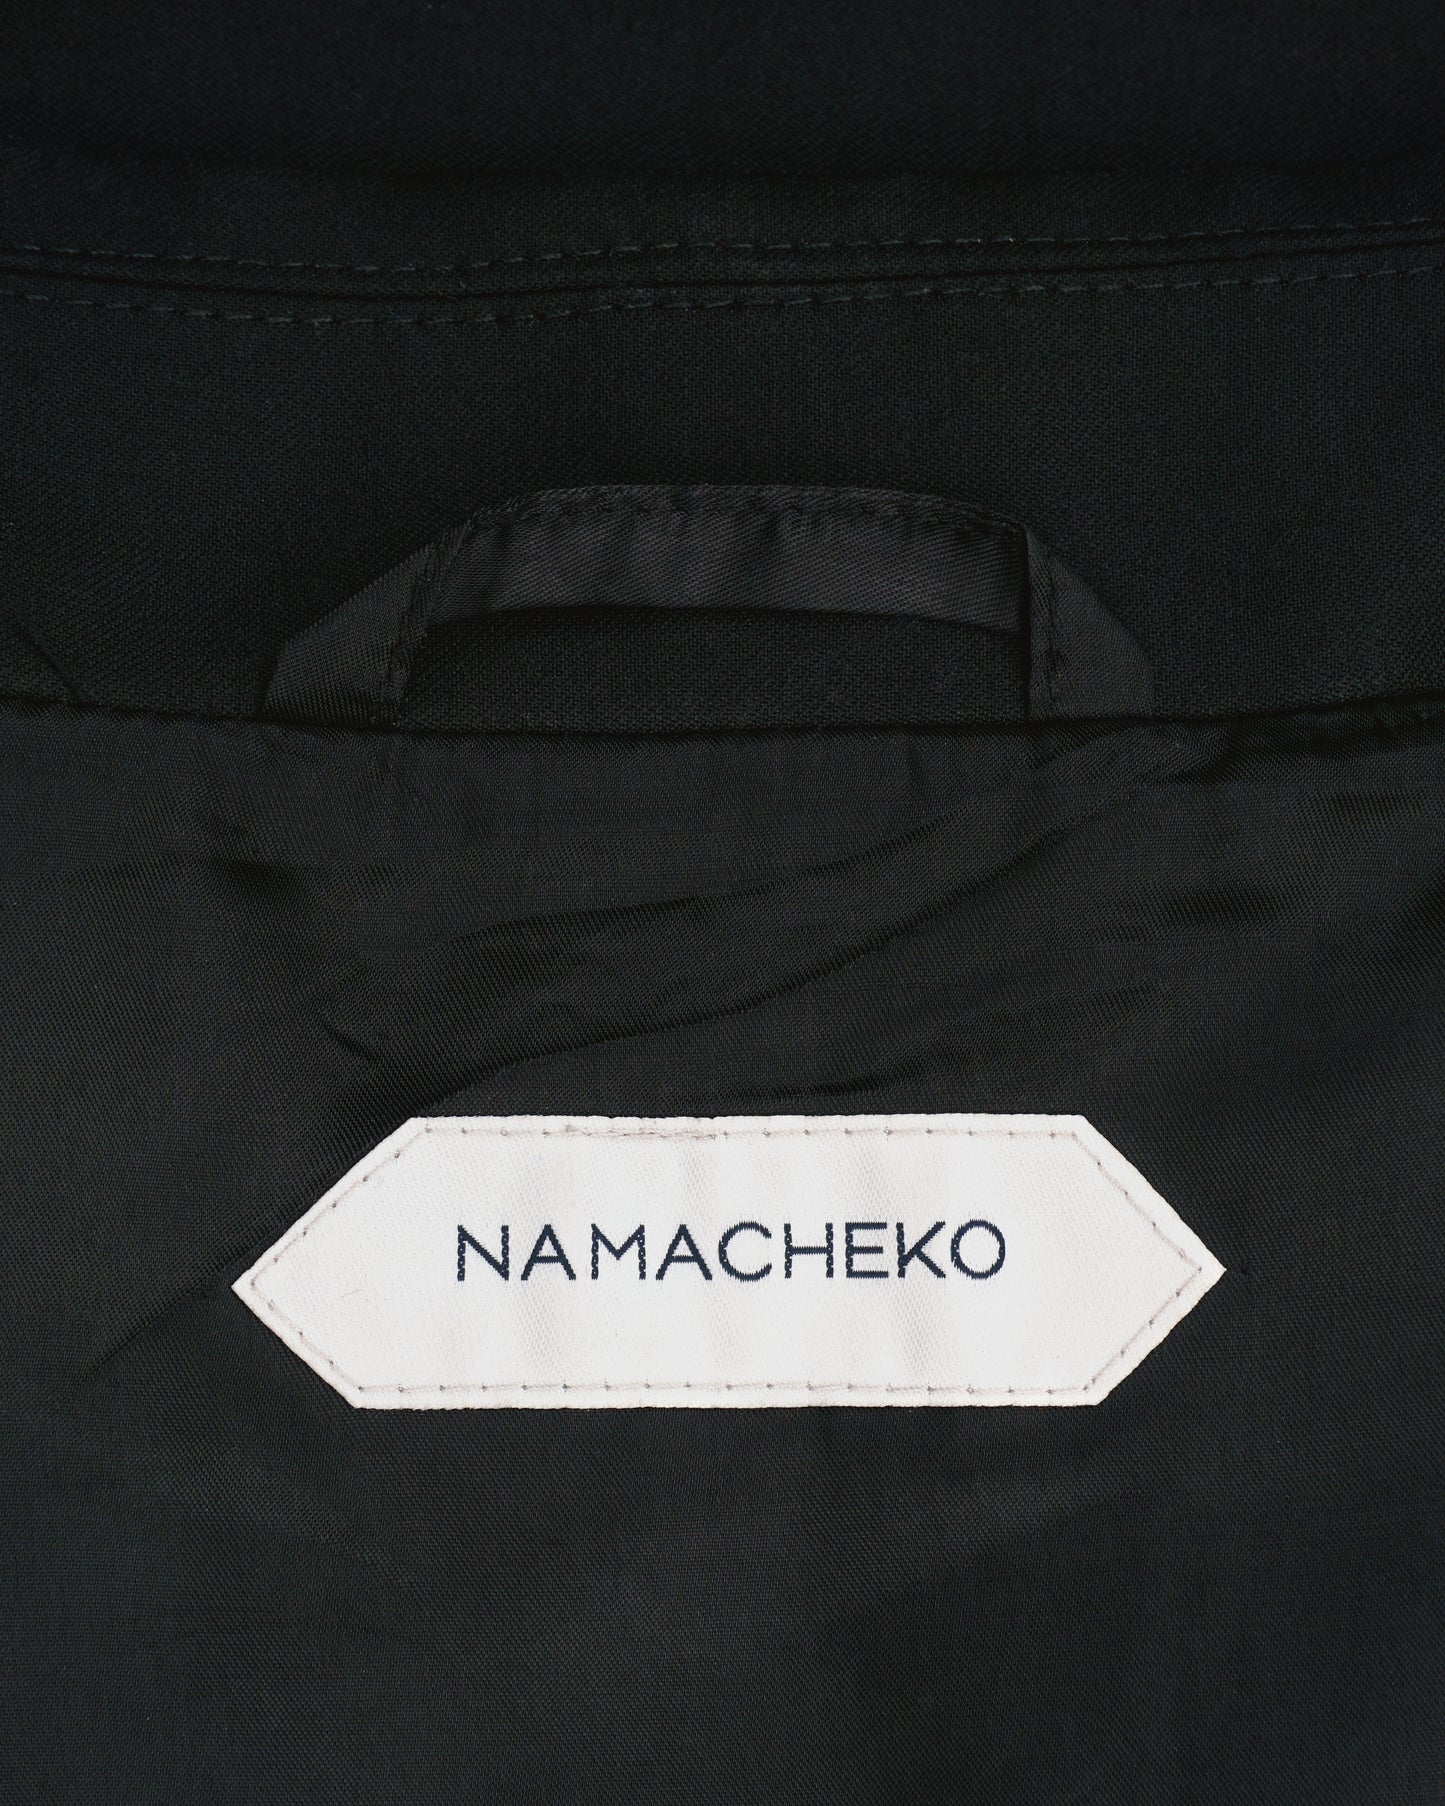 Namacheko SS20 Payuu Jacket